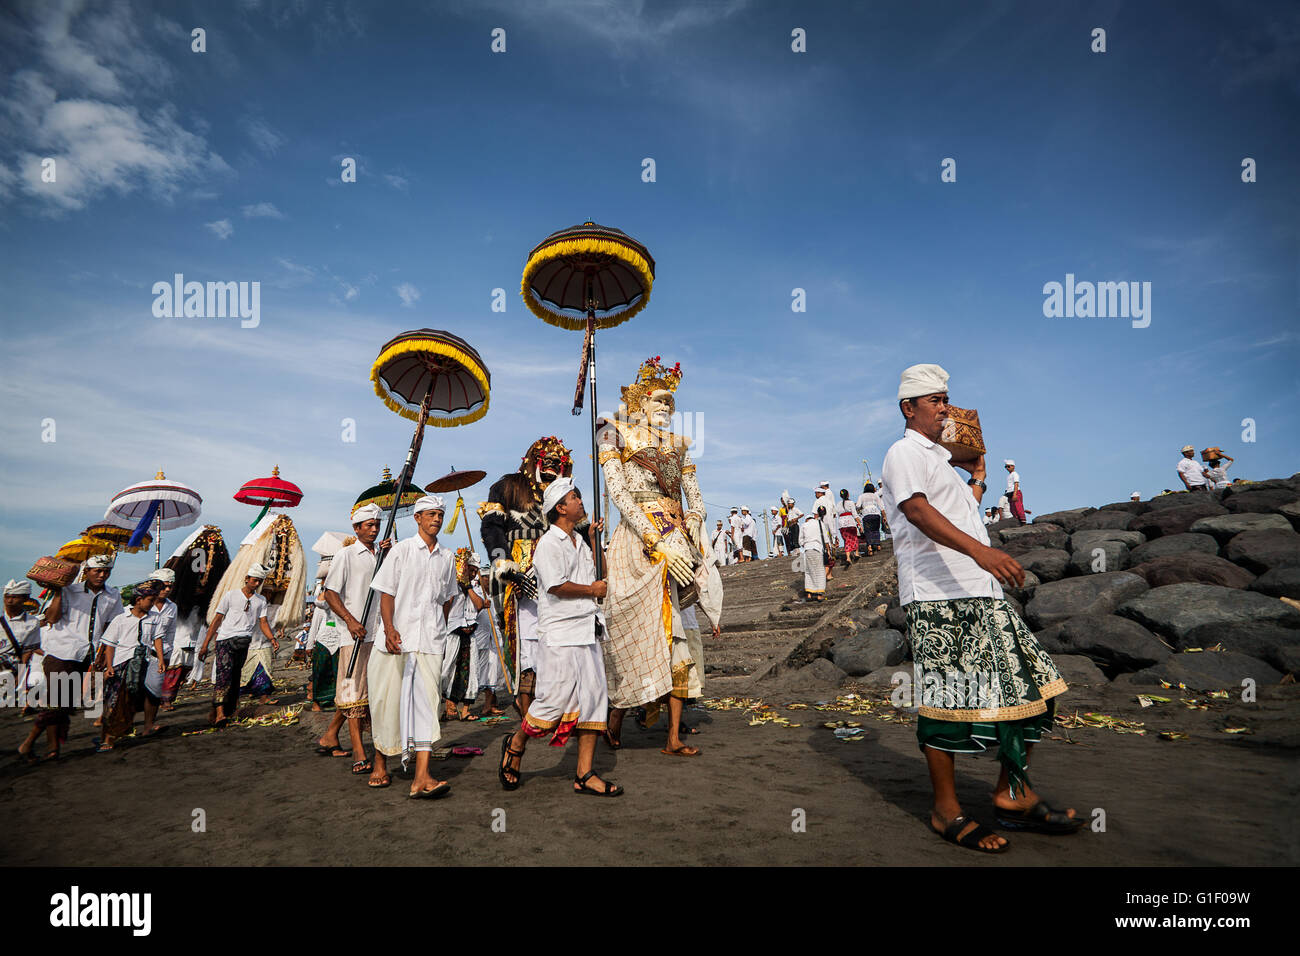 Religiöse Angebote, Sonnenschirme und hohen mythologischen Figuren in der balinesischen Kultur sind ein Bali Strand mitgeführt. Stockfoto